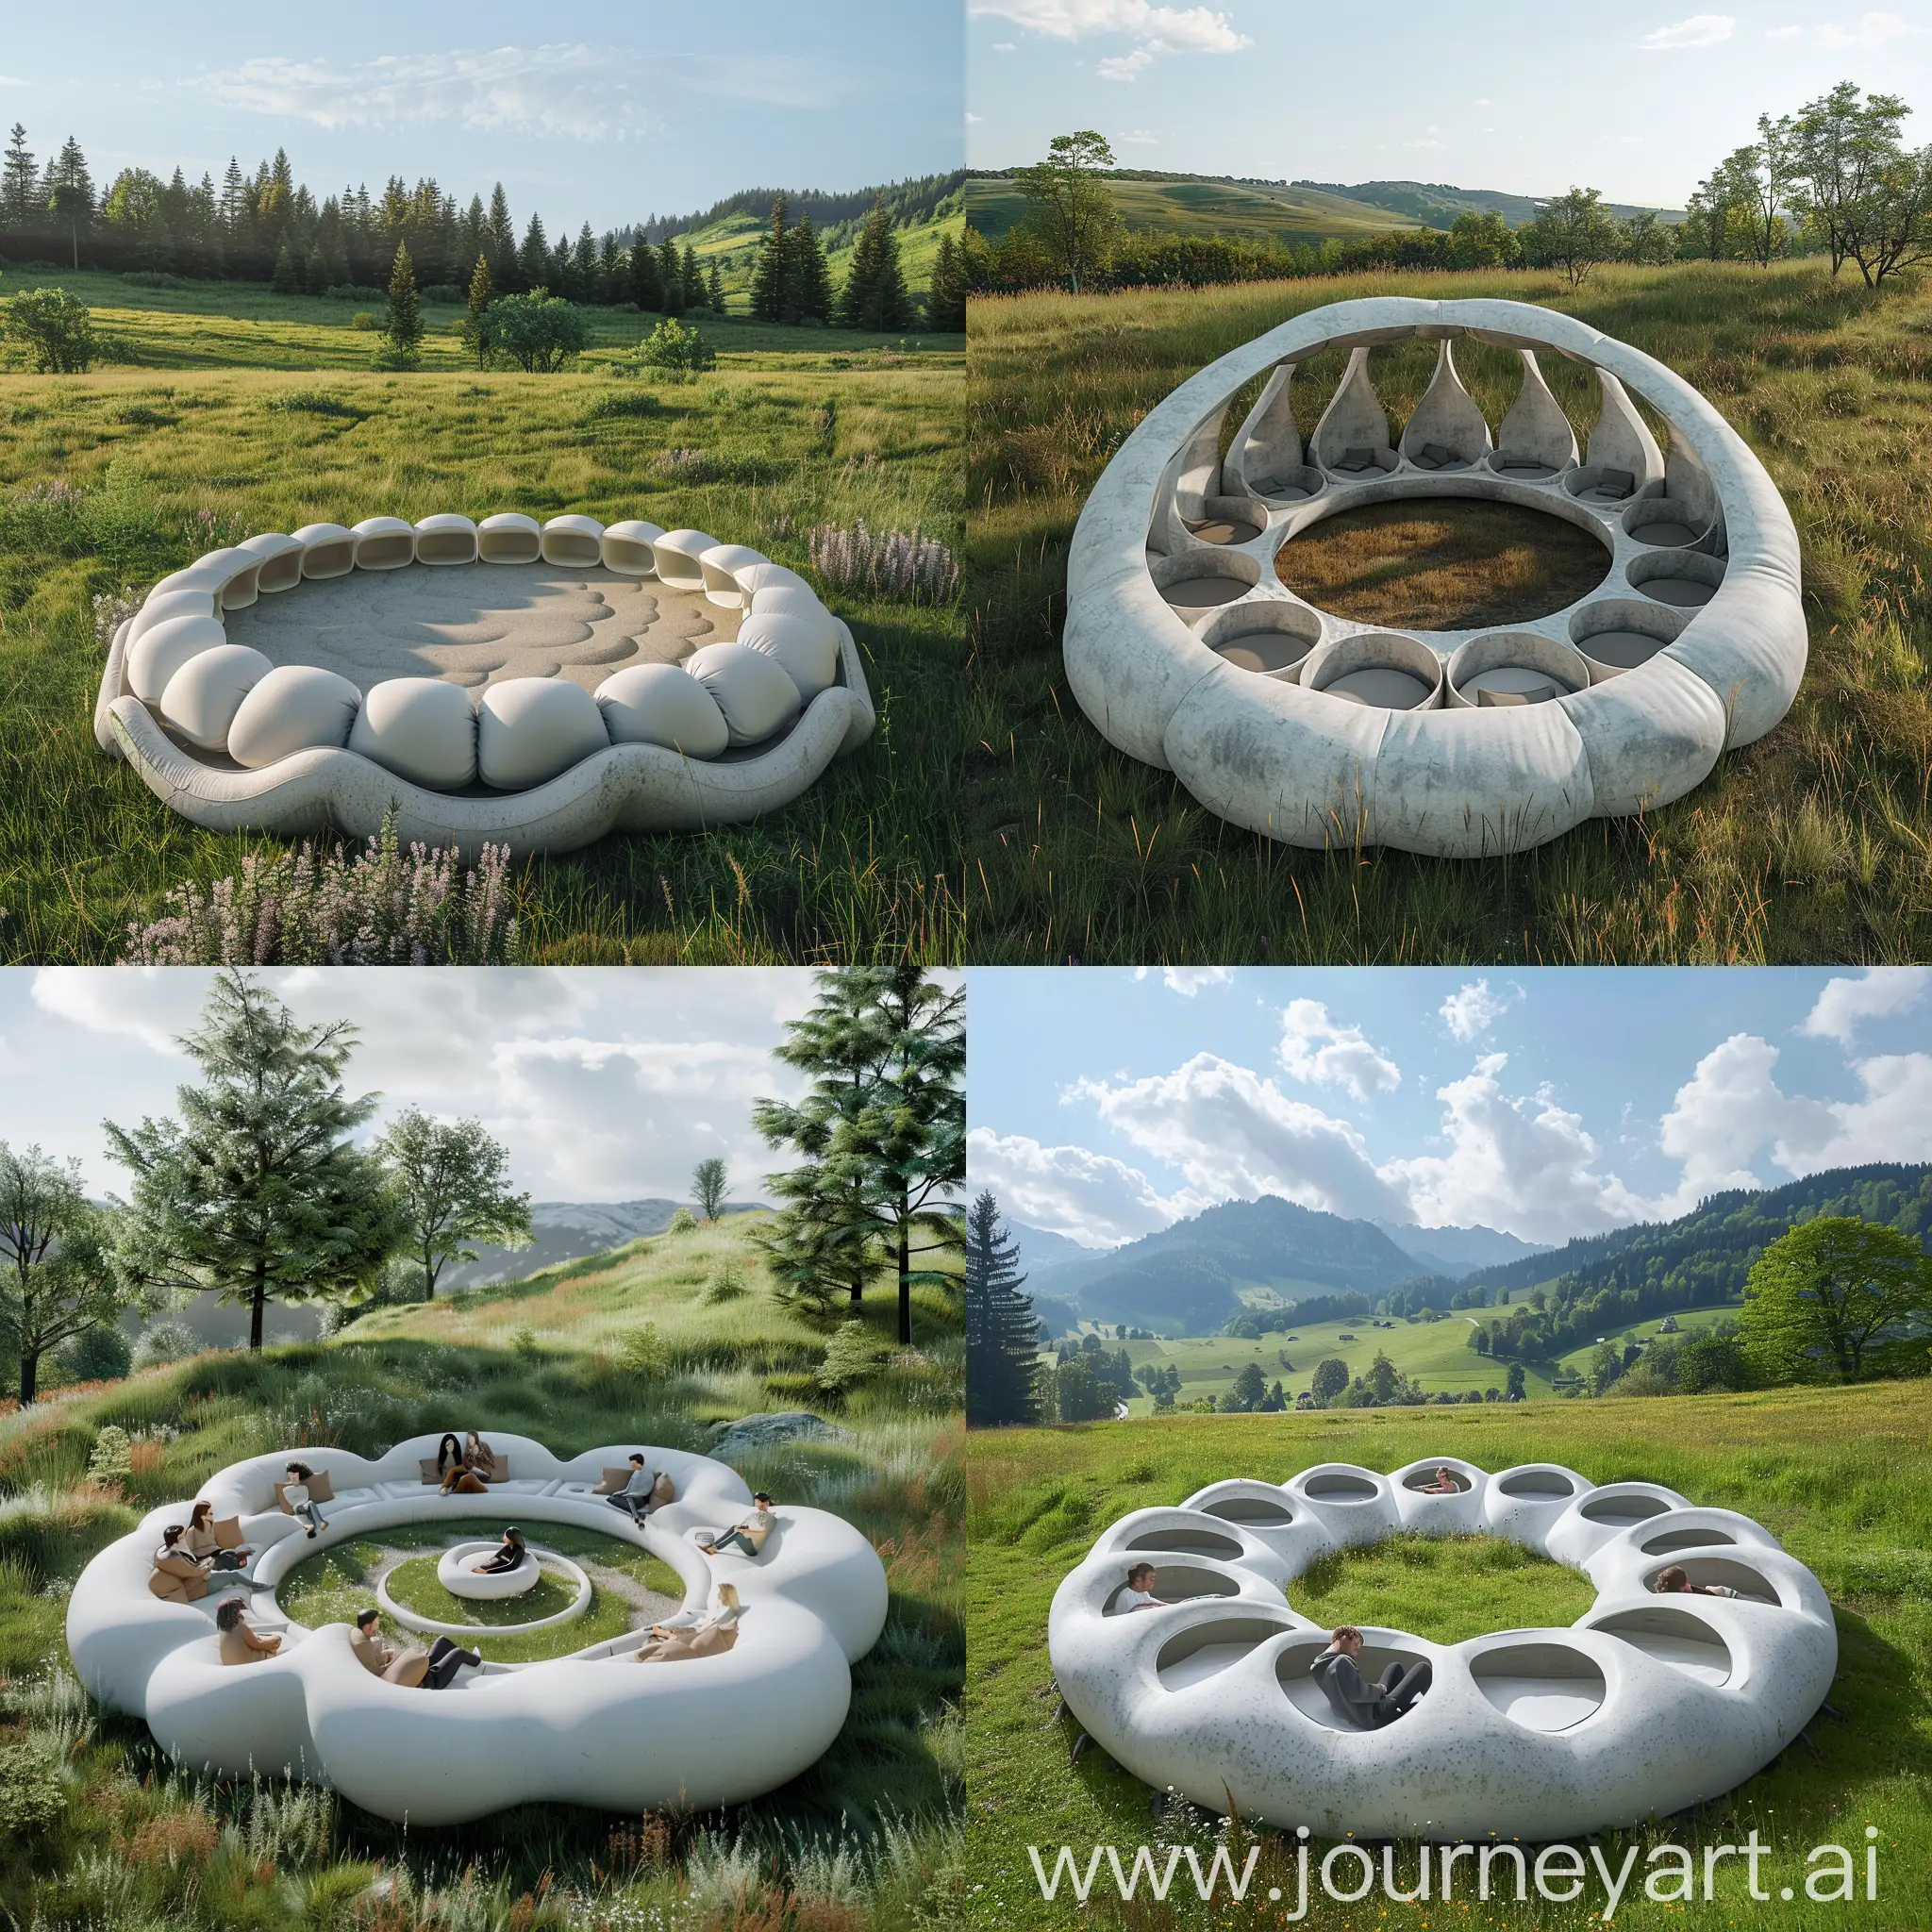 Cama circular gigante en forma de nube de cemento en un prado con espacios individuales para 12 personas, semienterrada, con bordes inflados, blanco